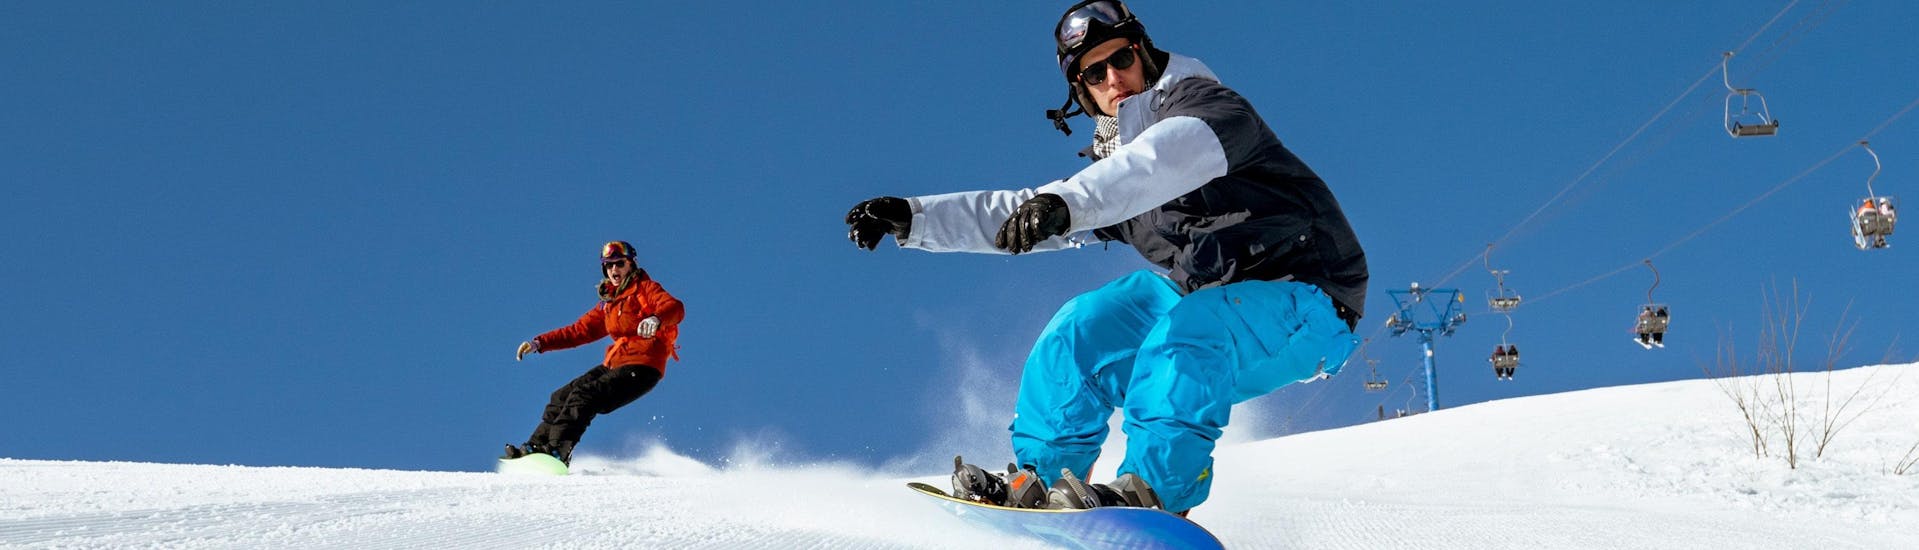 Due snowboarder stanno scendendo lungo una pista appena preparata durante le loro lezioni di snowboard.